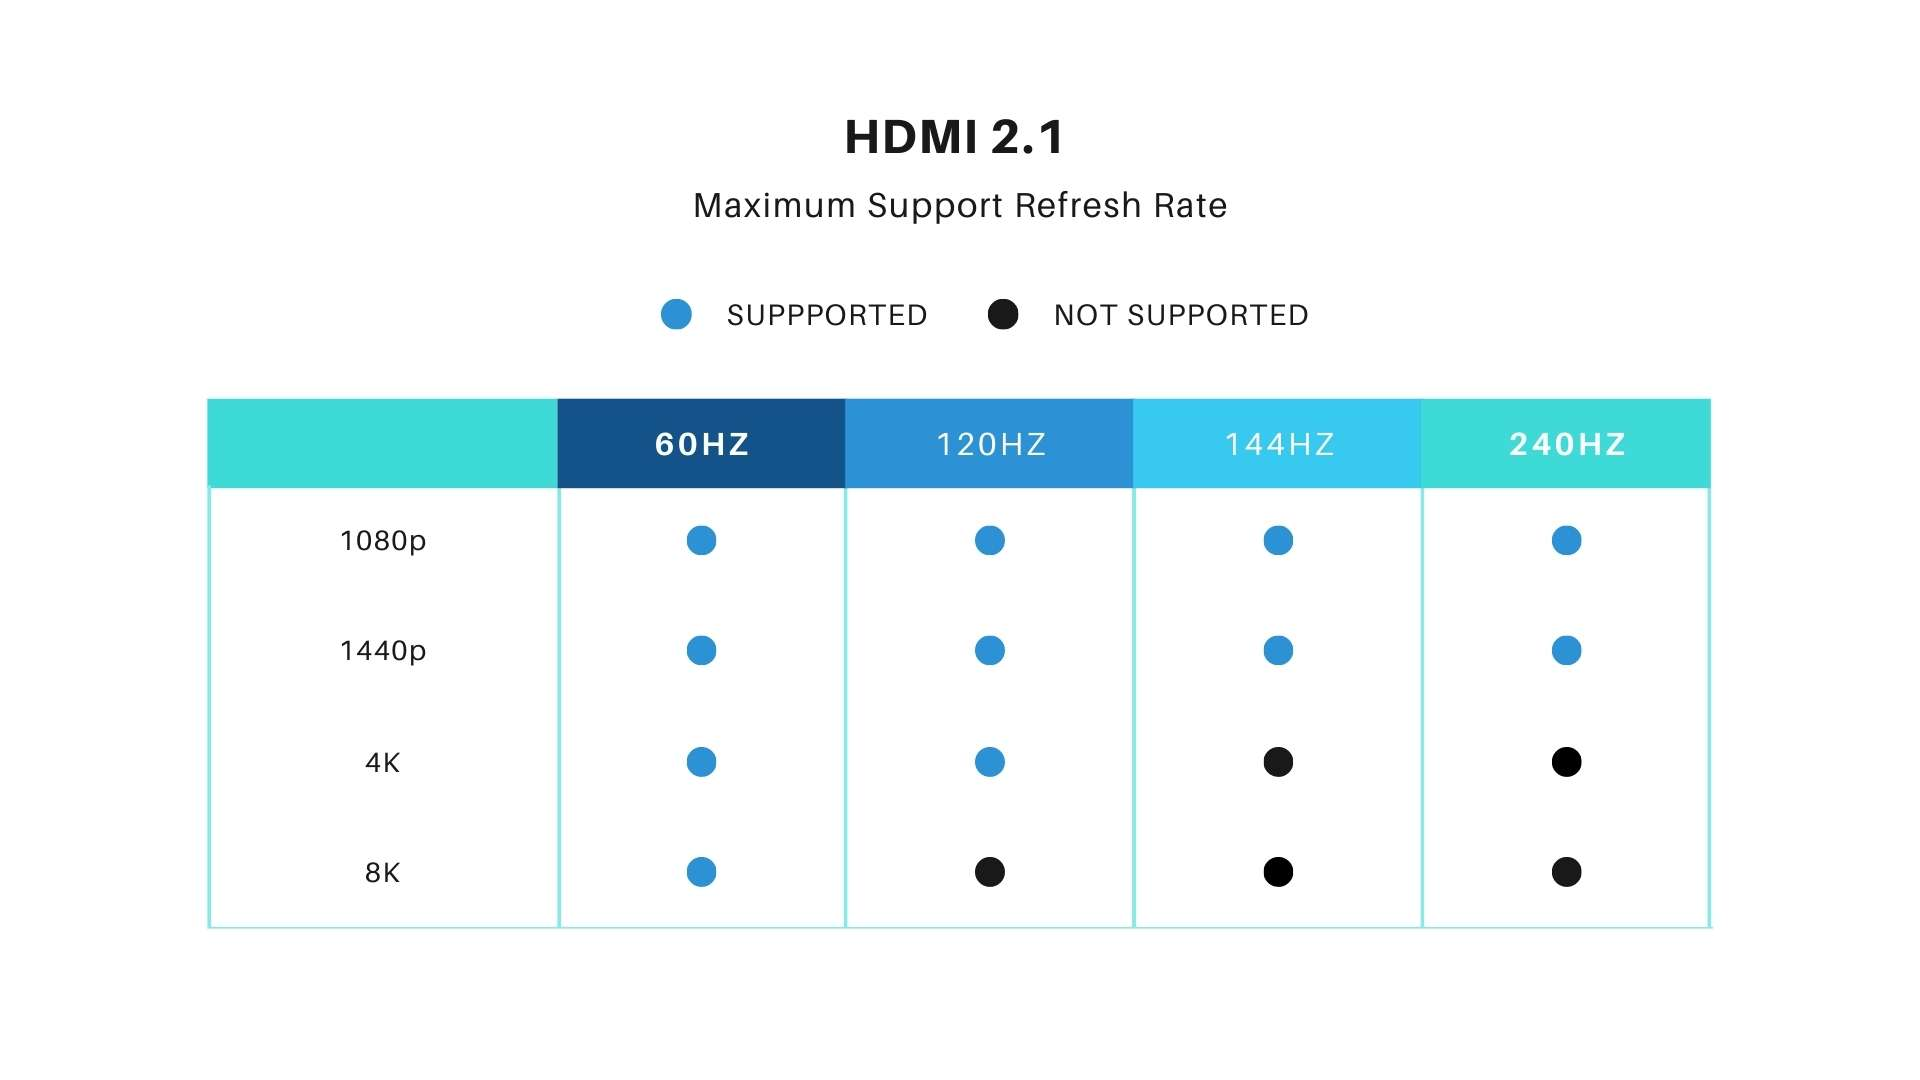 HDMI 2.1 vs HDMI 2.0 